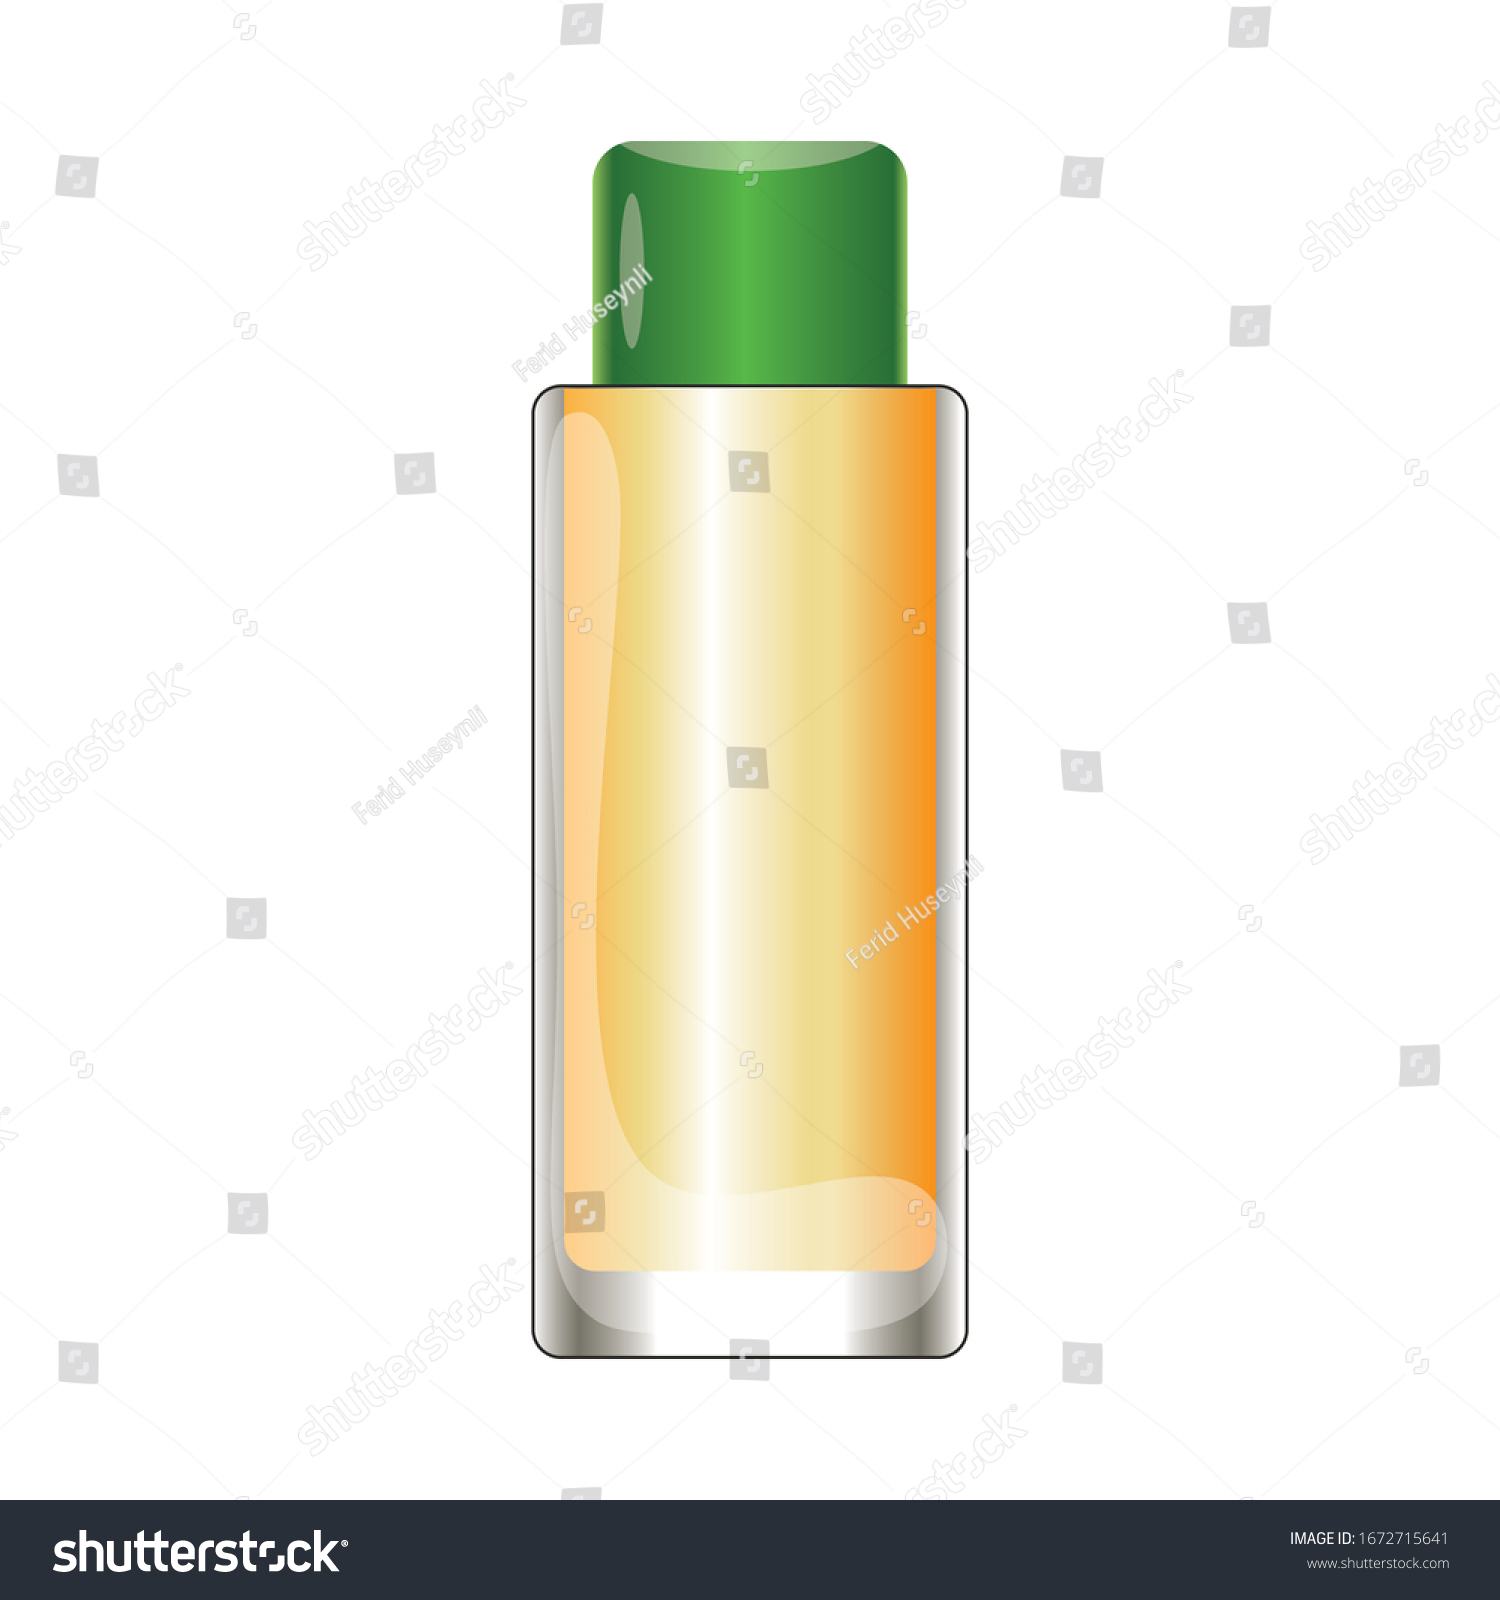 SVG of Lemon and tobacco cologne bottle vector, lemon kolonya for coronavirus vector illustration, isolated on white background svg